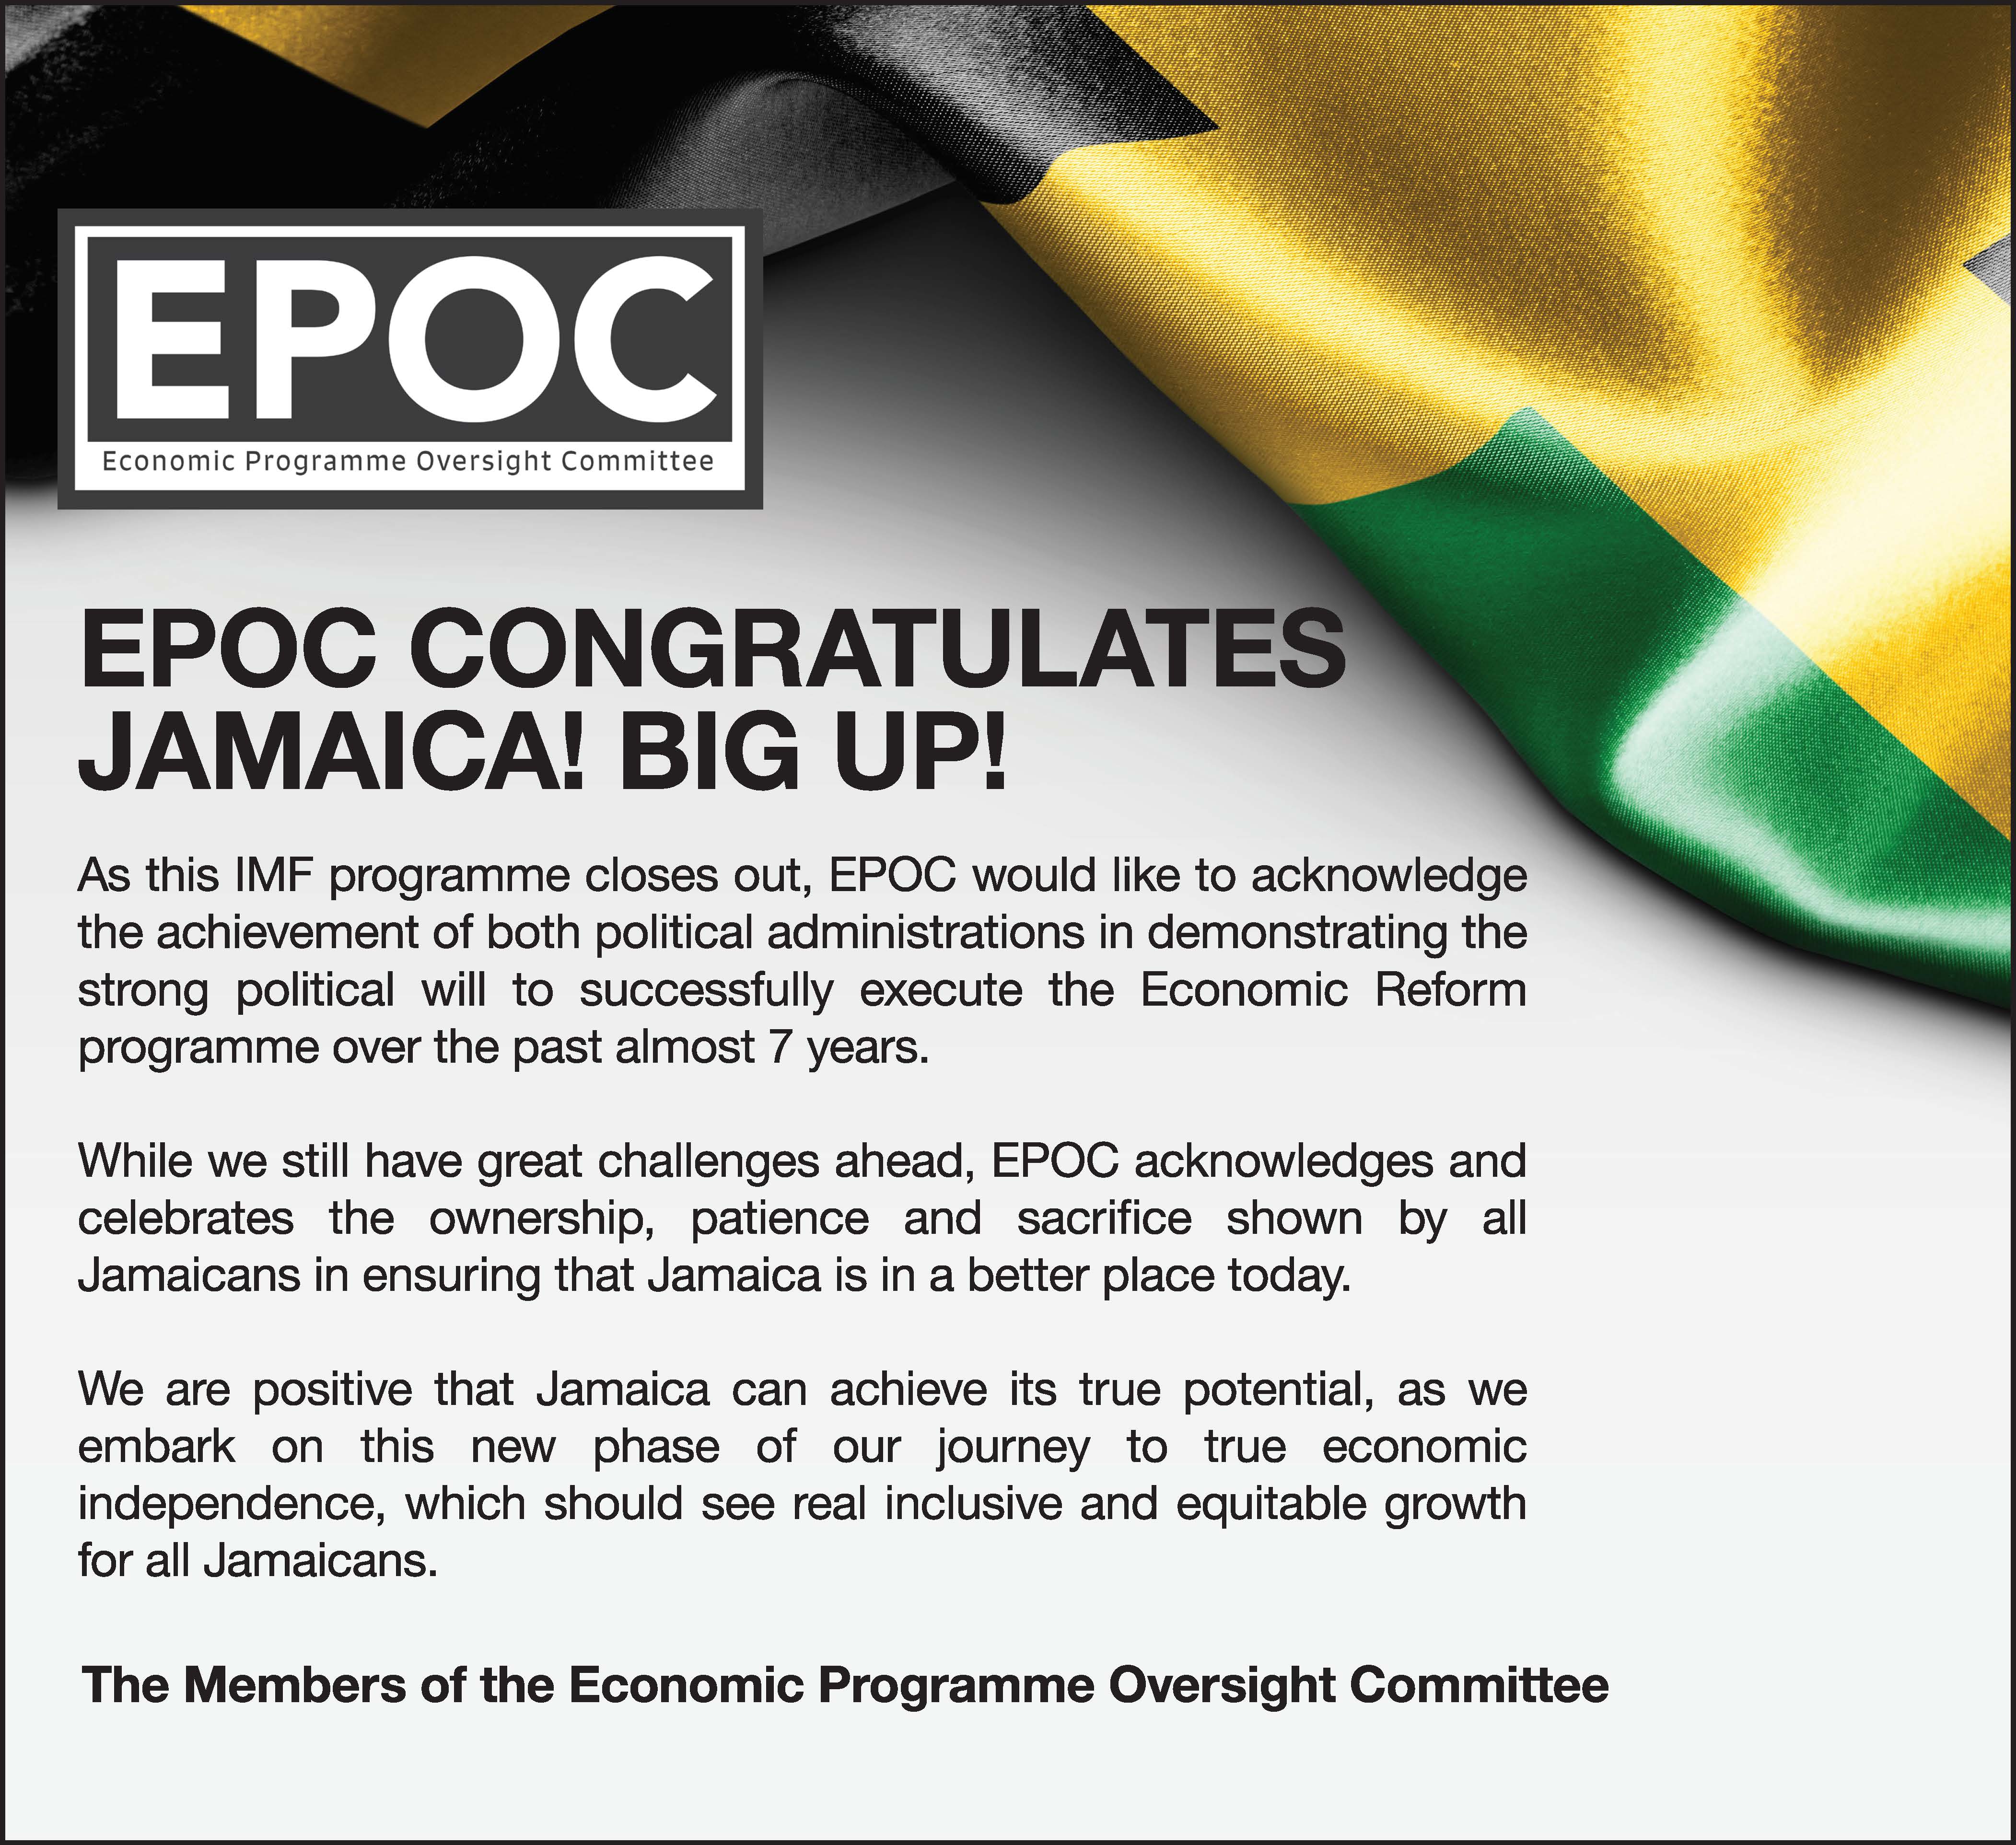 EPOC Congratulates Jamaica!